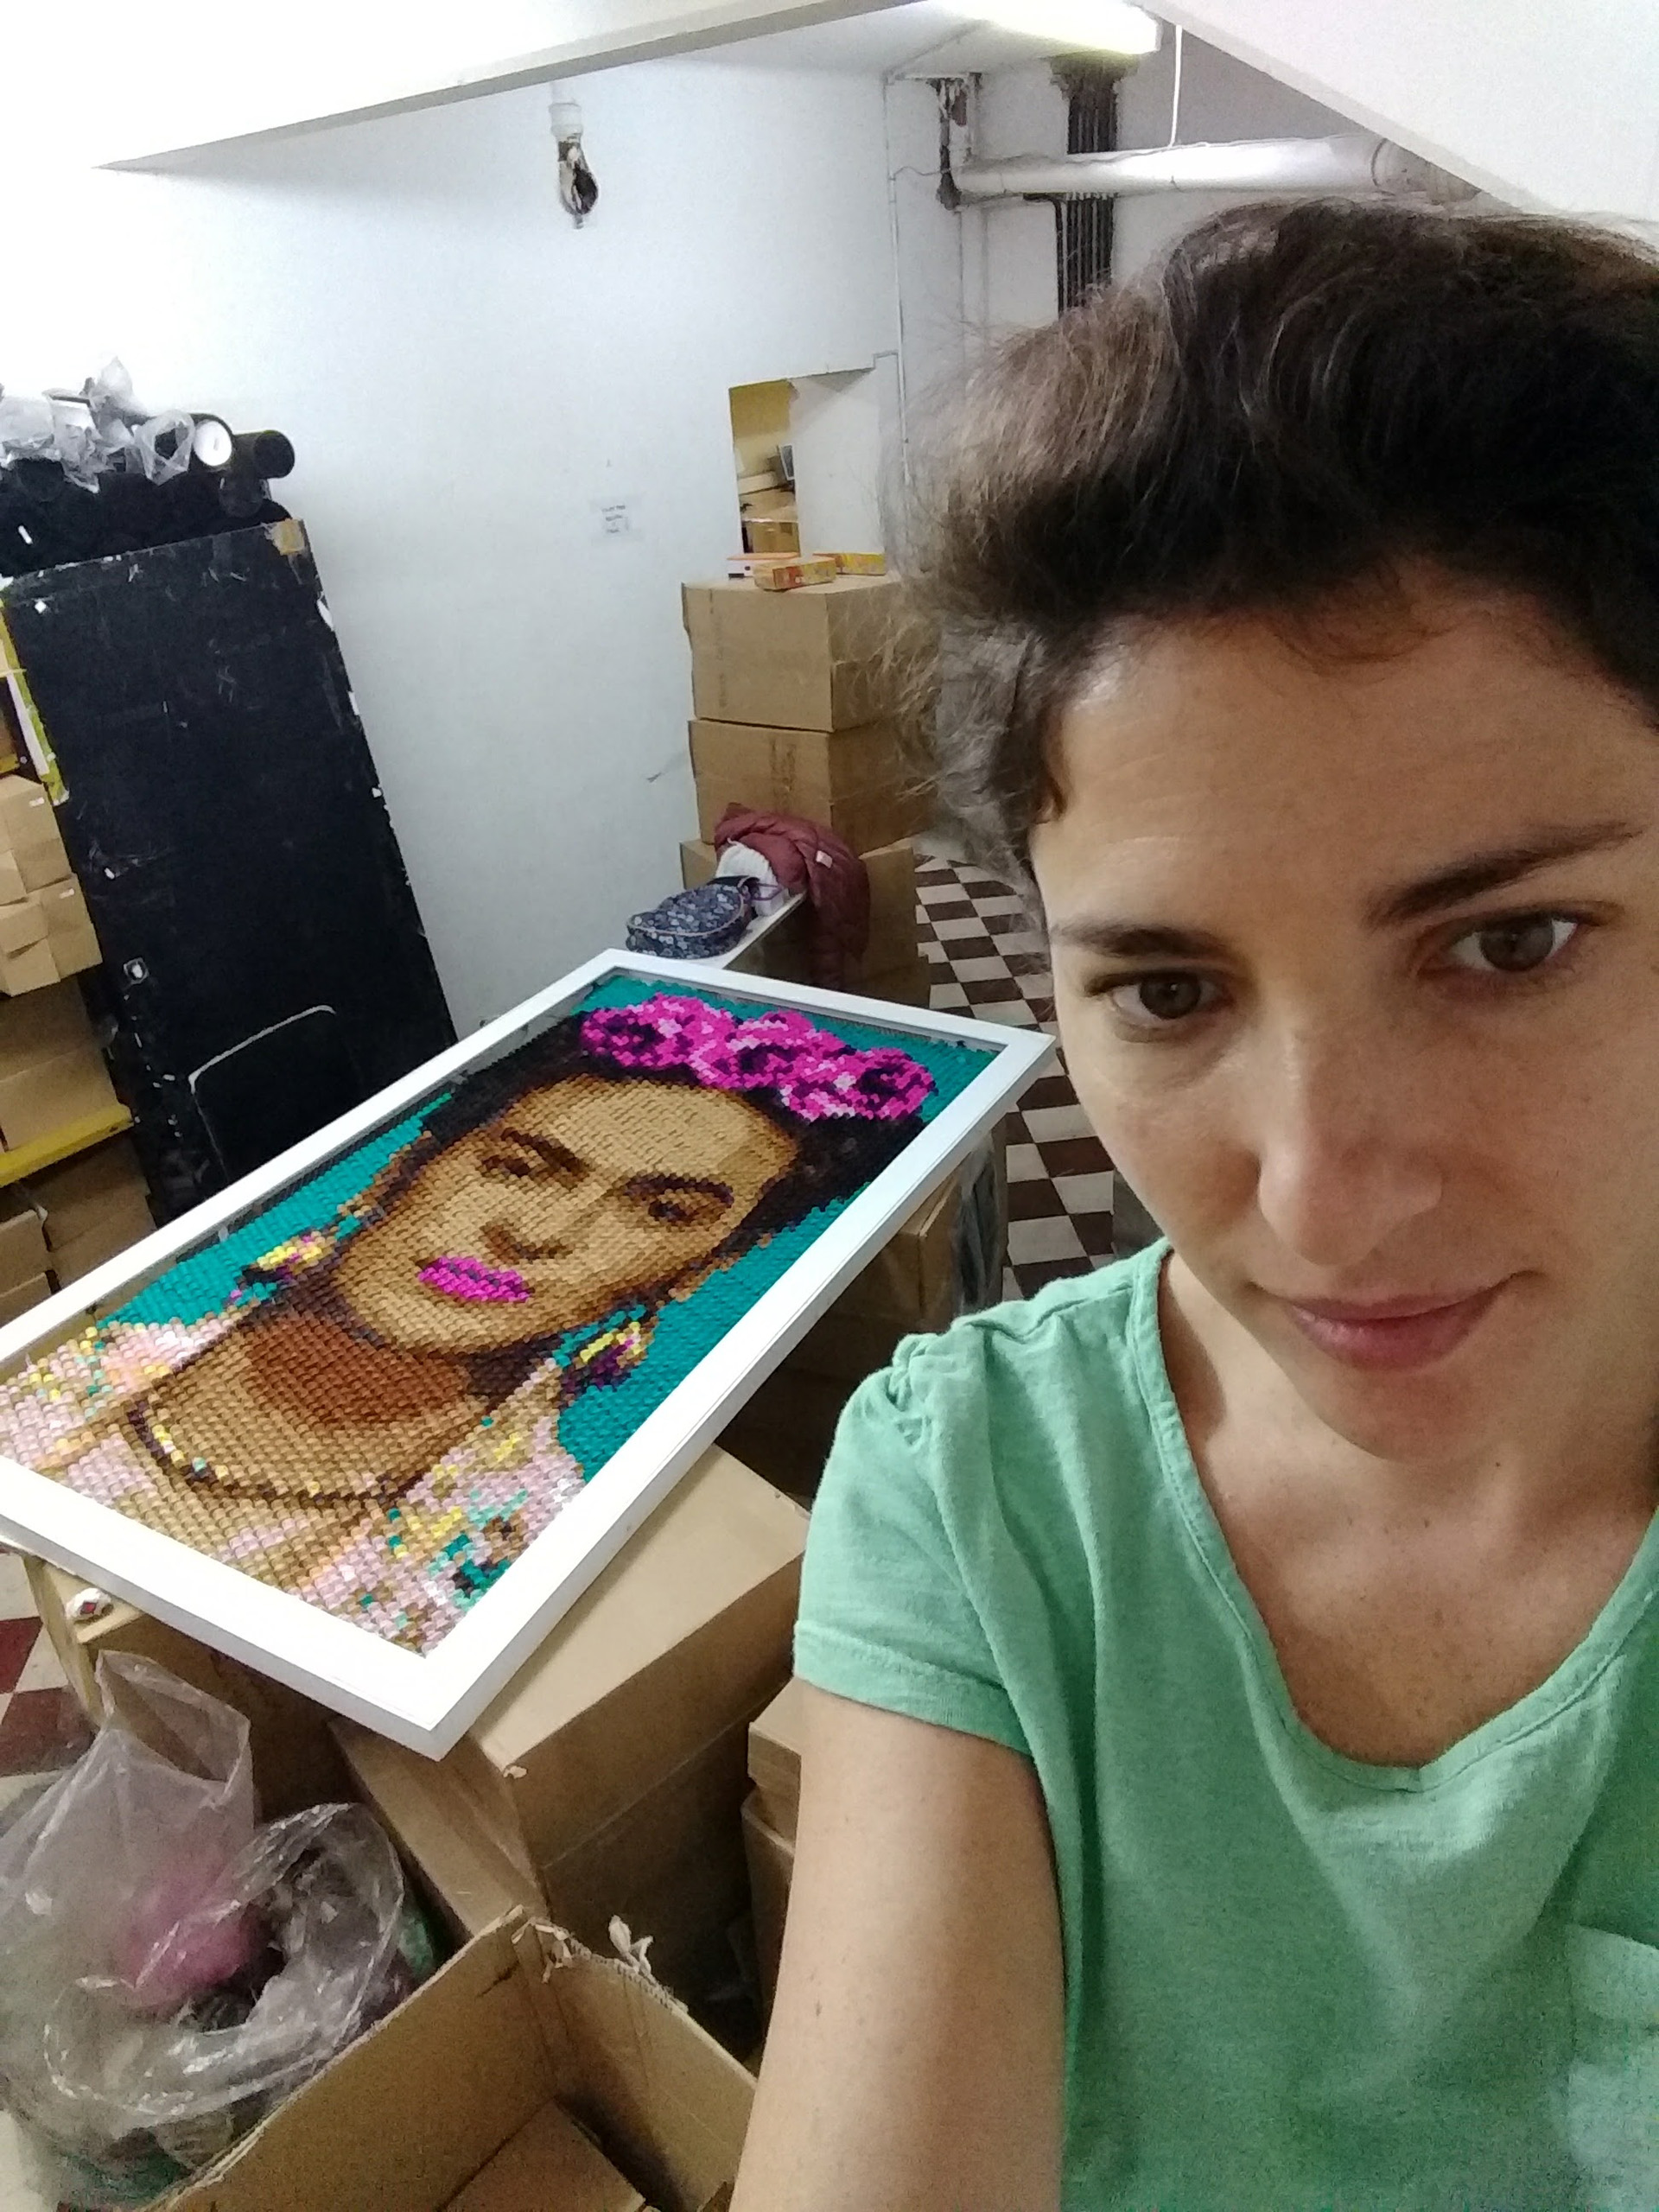 Letali cuando terminó la obra de Frida Kahlo: todos sus trabajos están disponibles en sus redes sociales